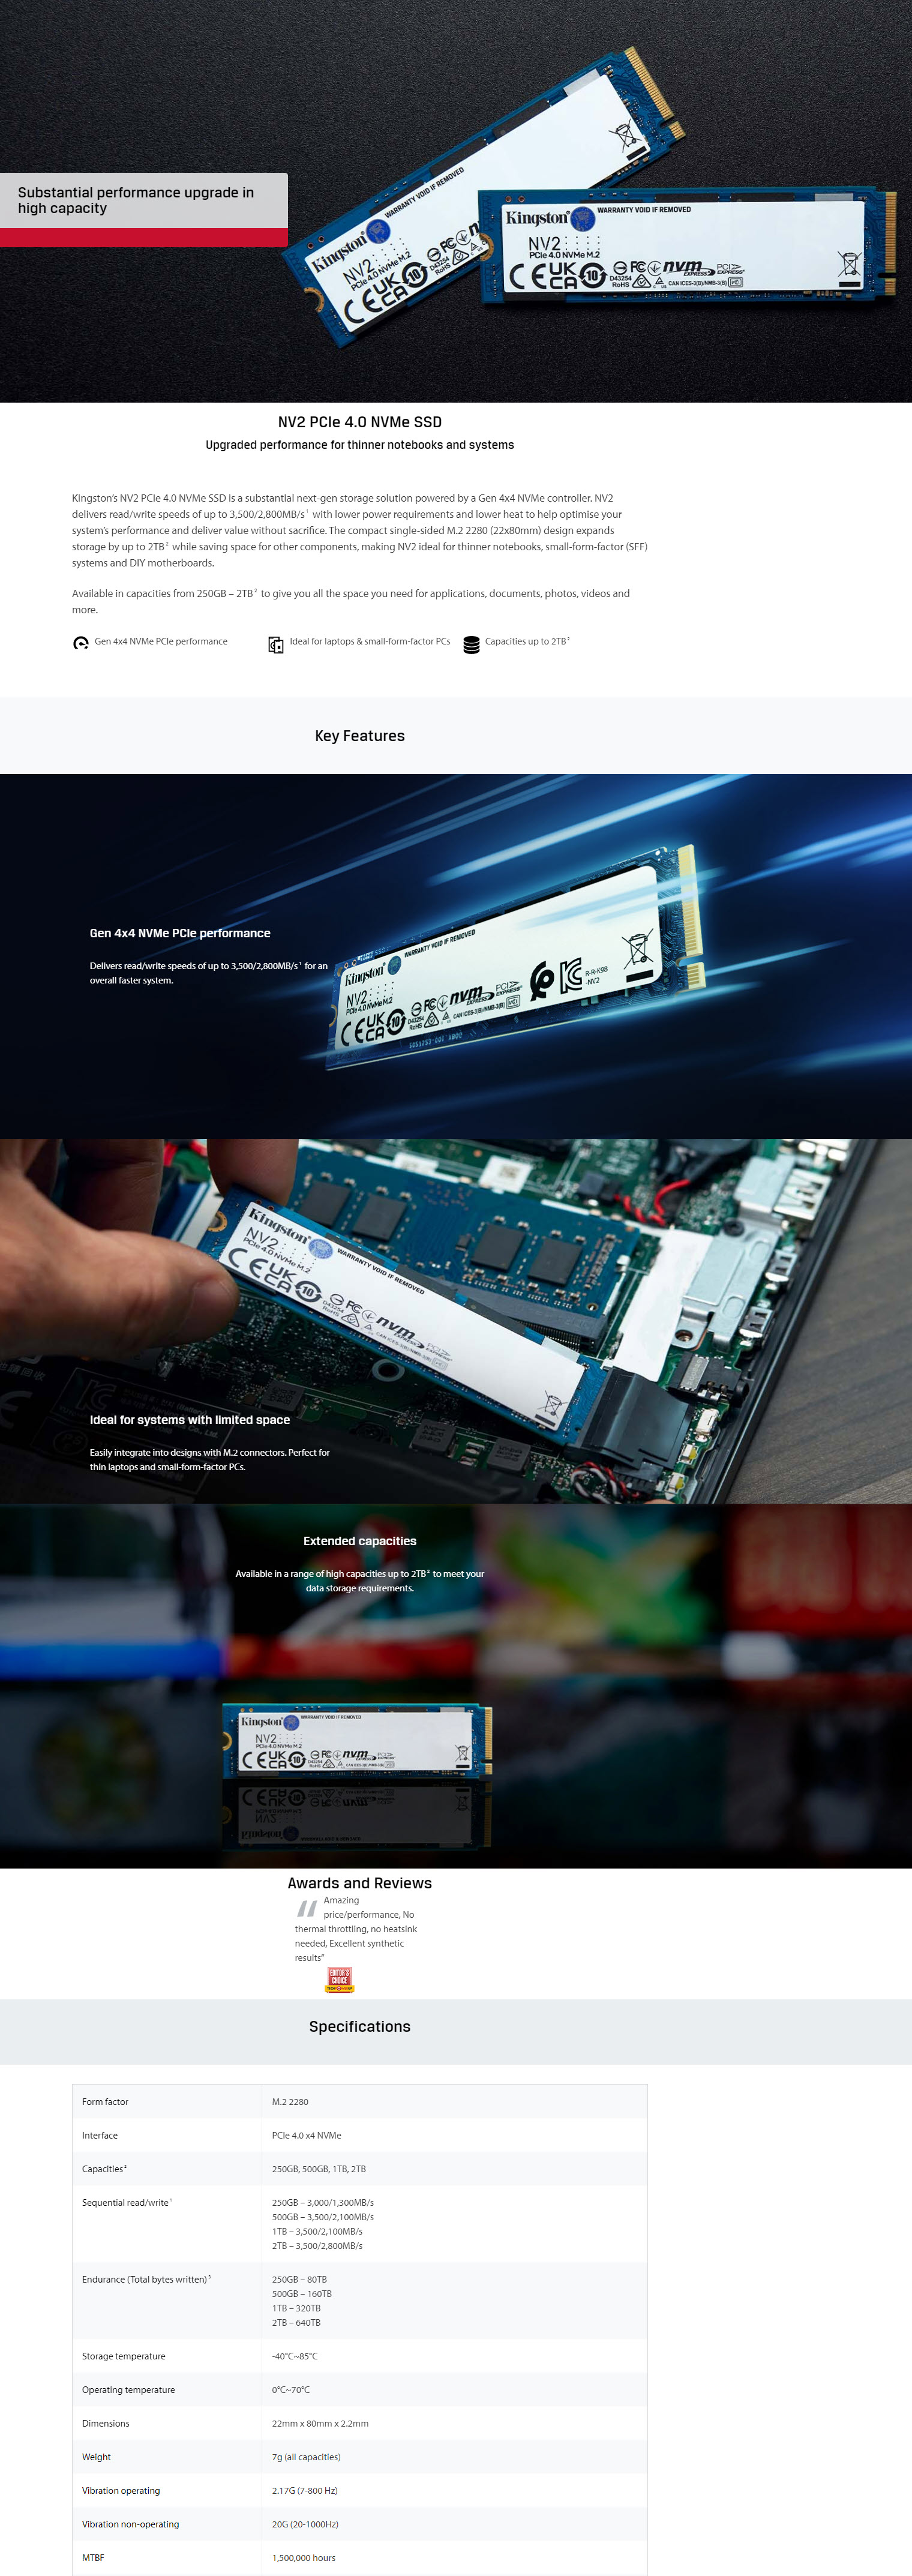 SSD Kingston NV2 4 To PCIe 4.0 NVMe Gen 4x4